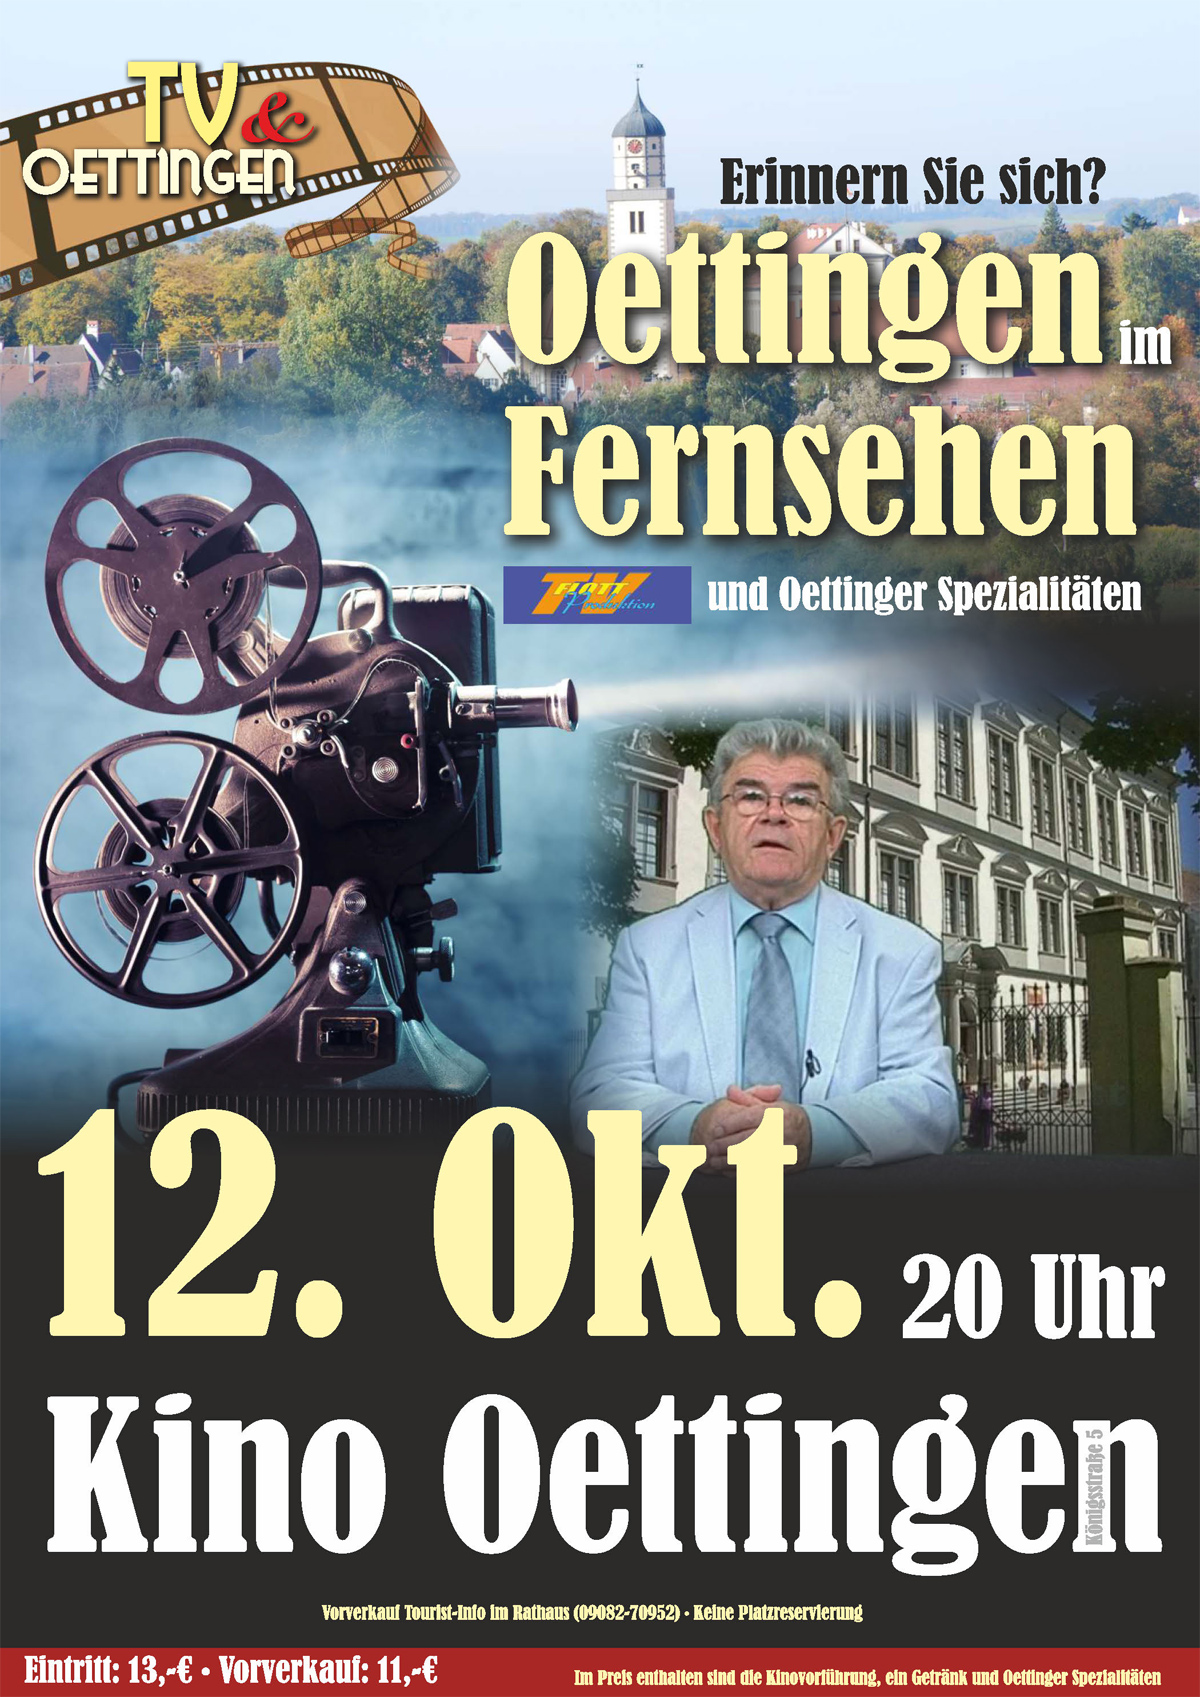 Erinnern sie sich Oettingen im Fernsehen und Oettinger Spezialitäten am 20. Oktober 2018